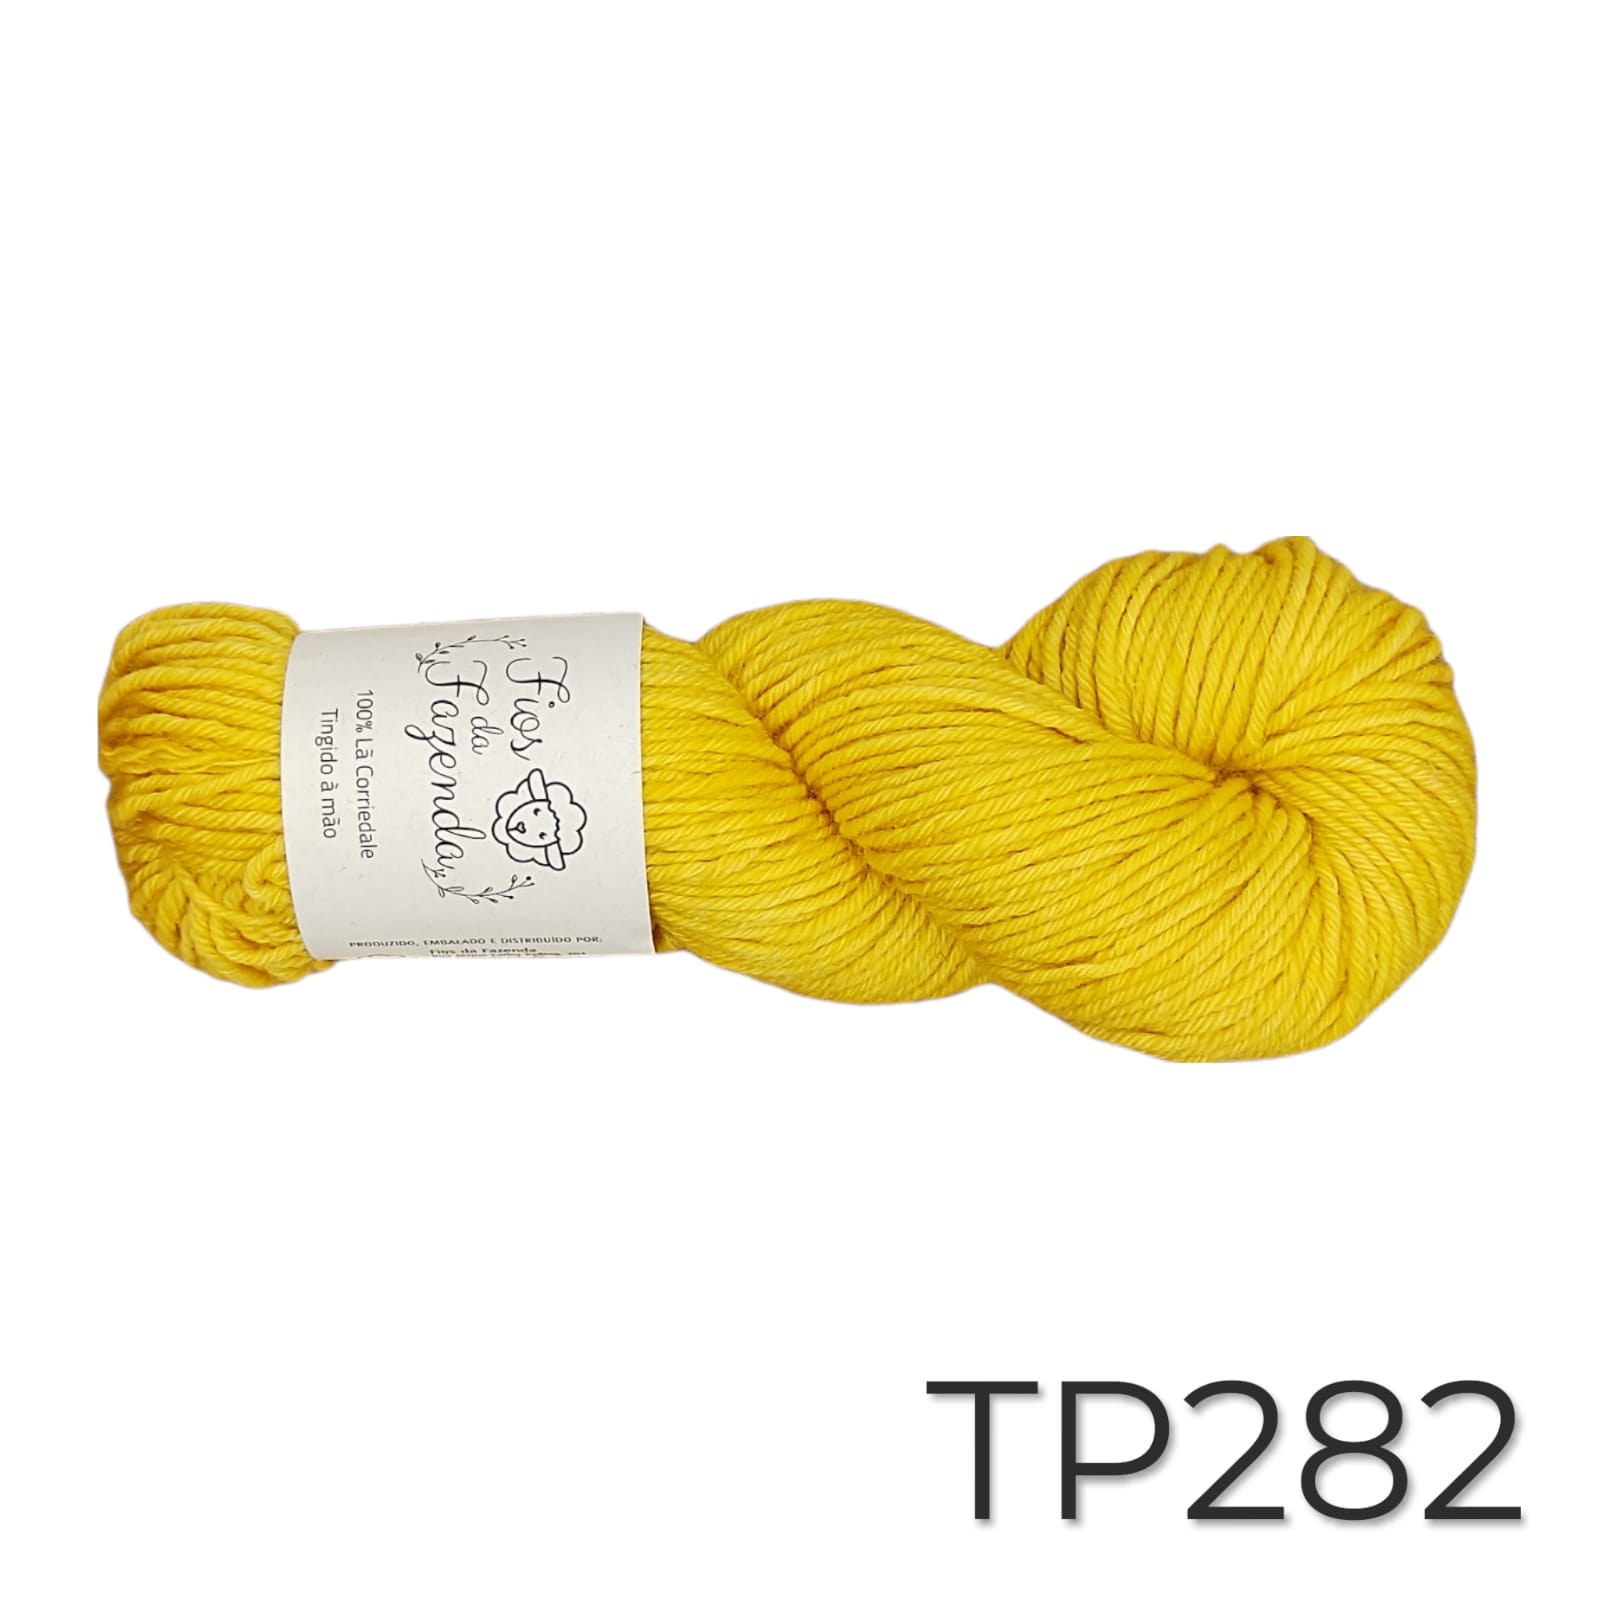 Tapiz -  Fio de lã para Tapeçaria - 115m / 100g - Foto 53